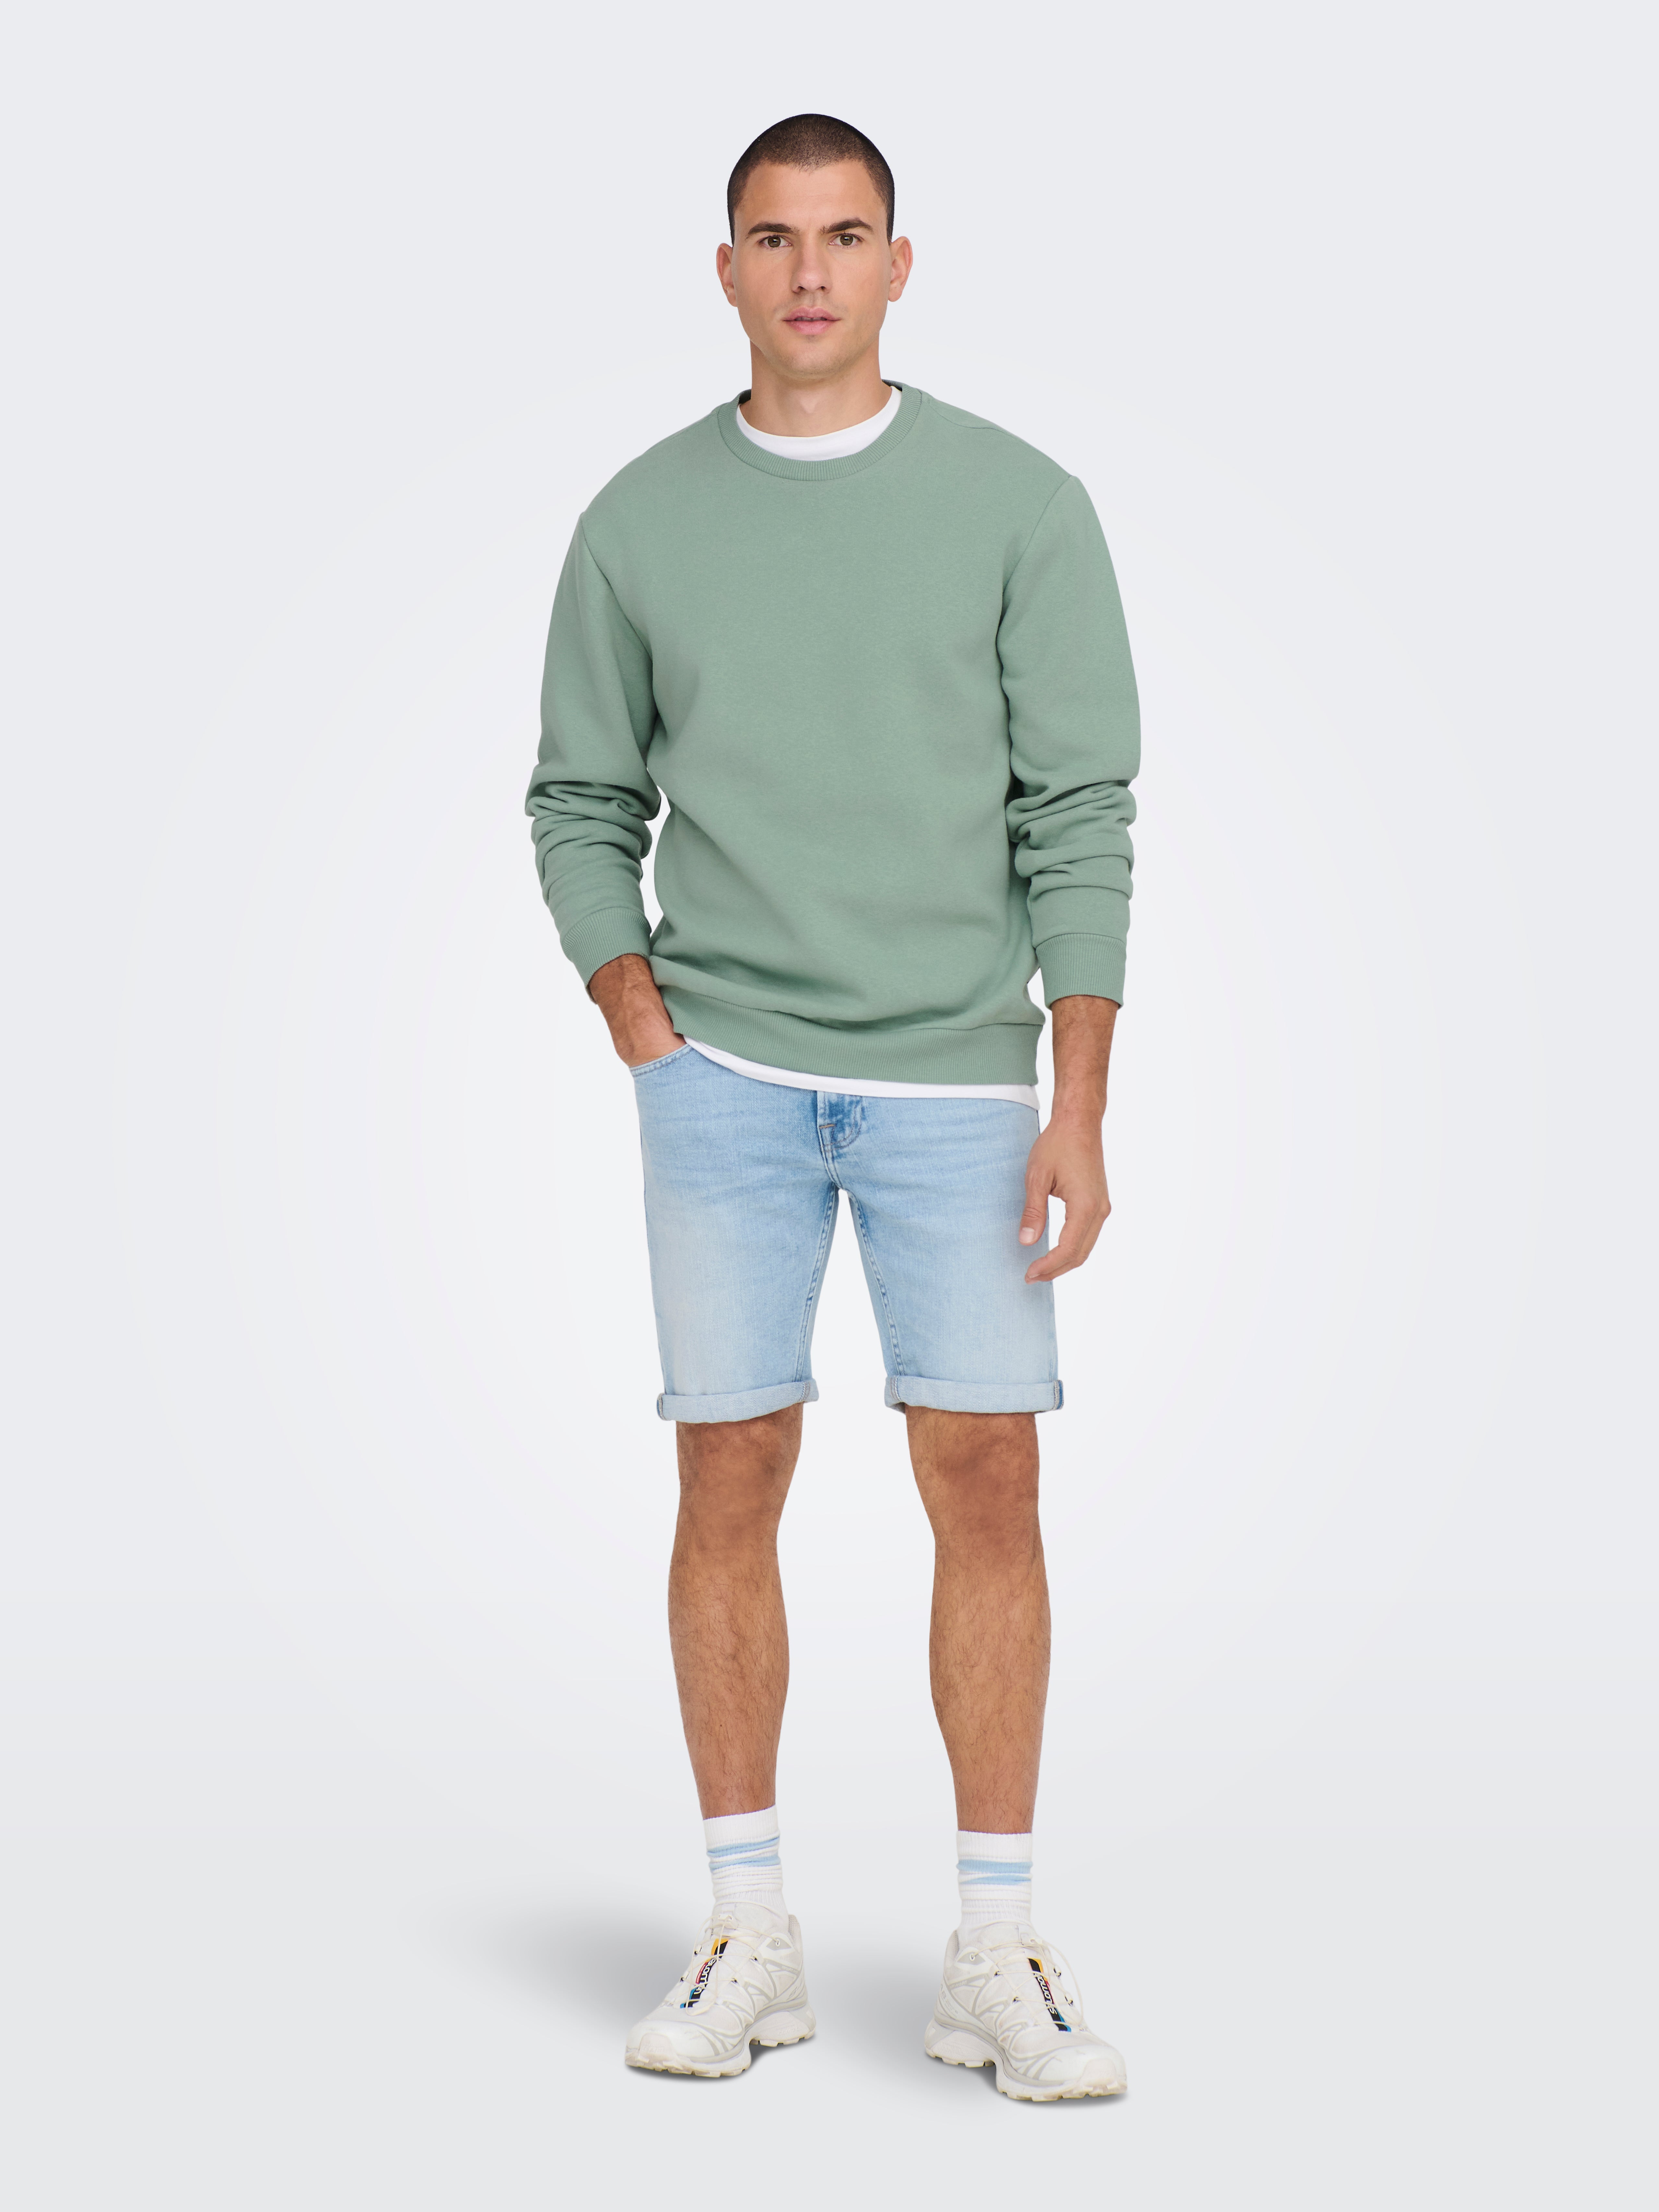 Regular Fit Round Neck Sweatshirts | Medium Grey | ONLY & SONS®